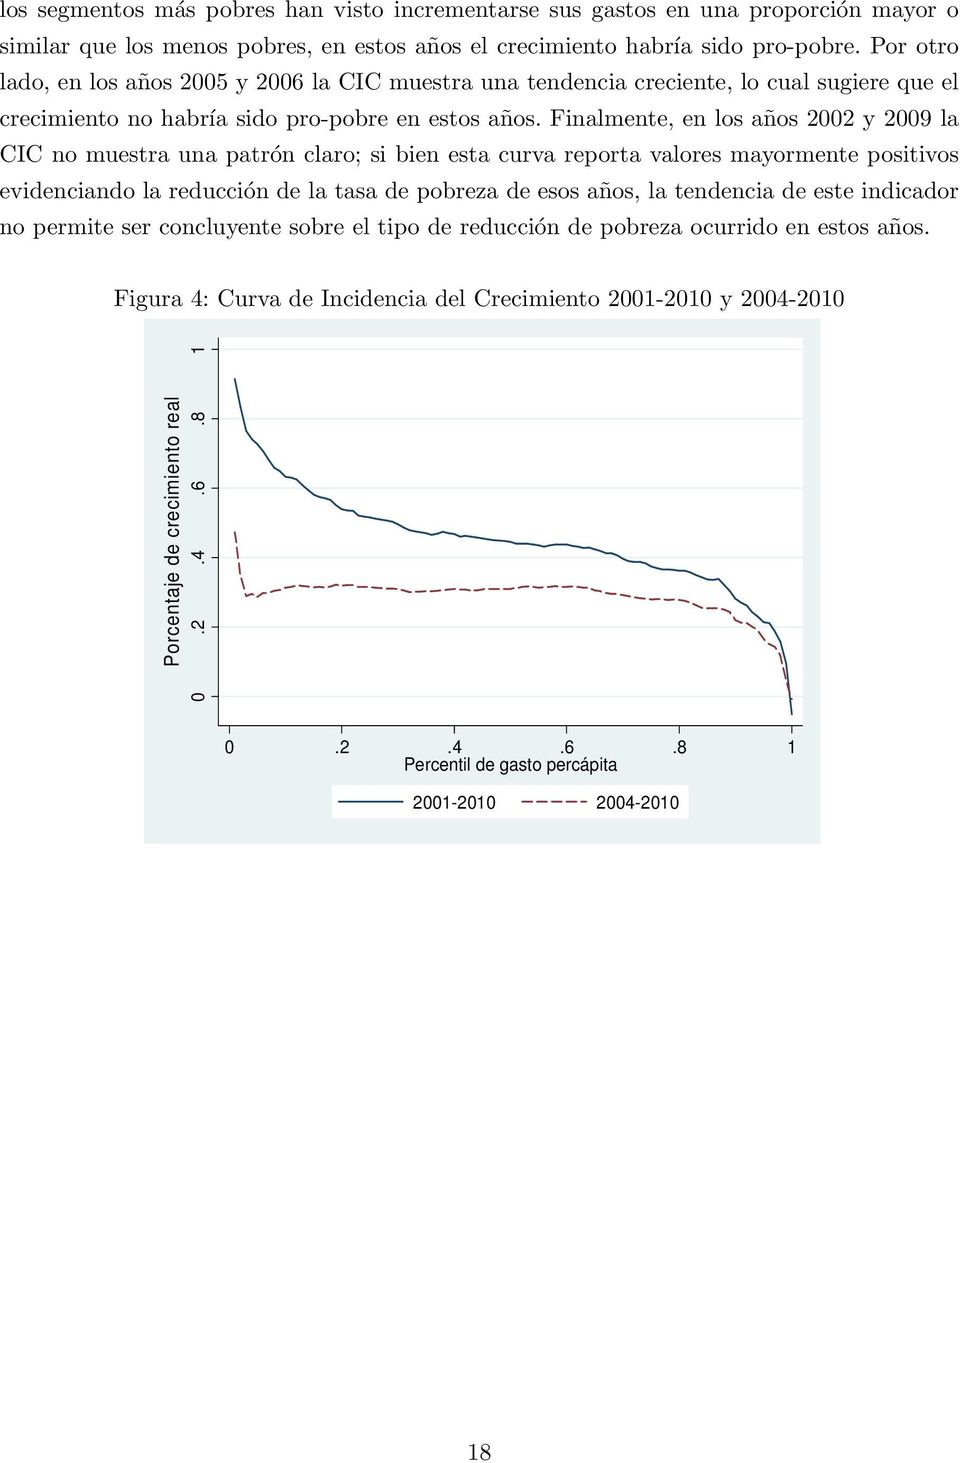 Finalmente, en los años 2002 y 2009 la CIC no muestra una patrón claro; si bien esta curva reporta valores mayormente positivos evidenciando la reducción de la tasa de pobreza de esos años, la